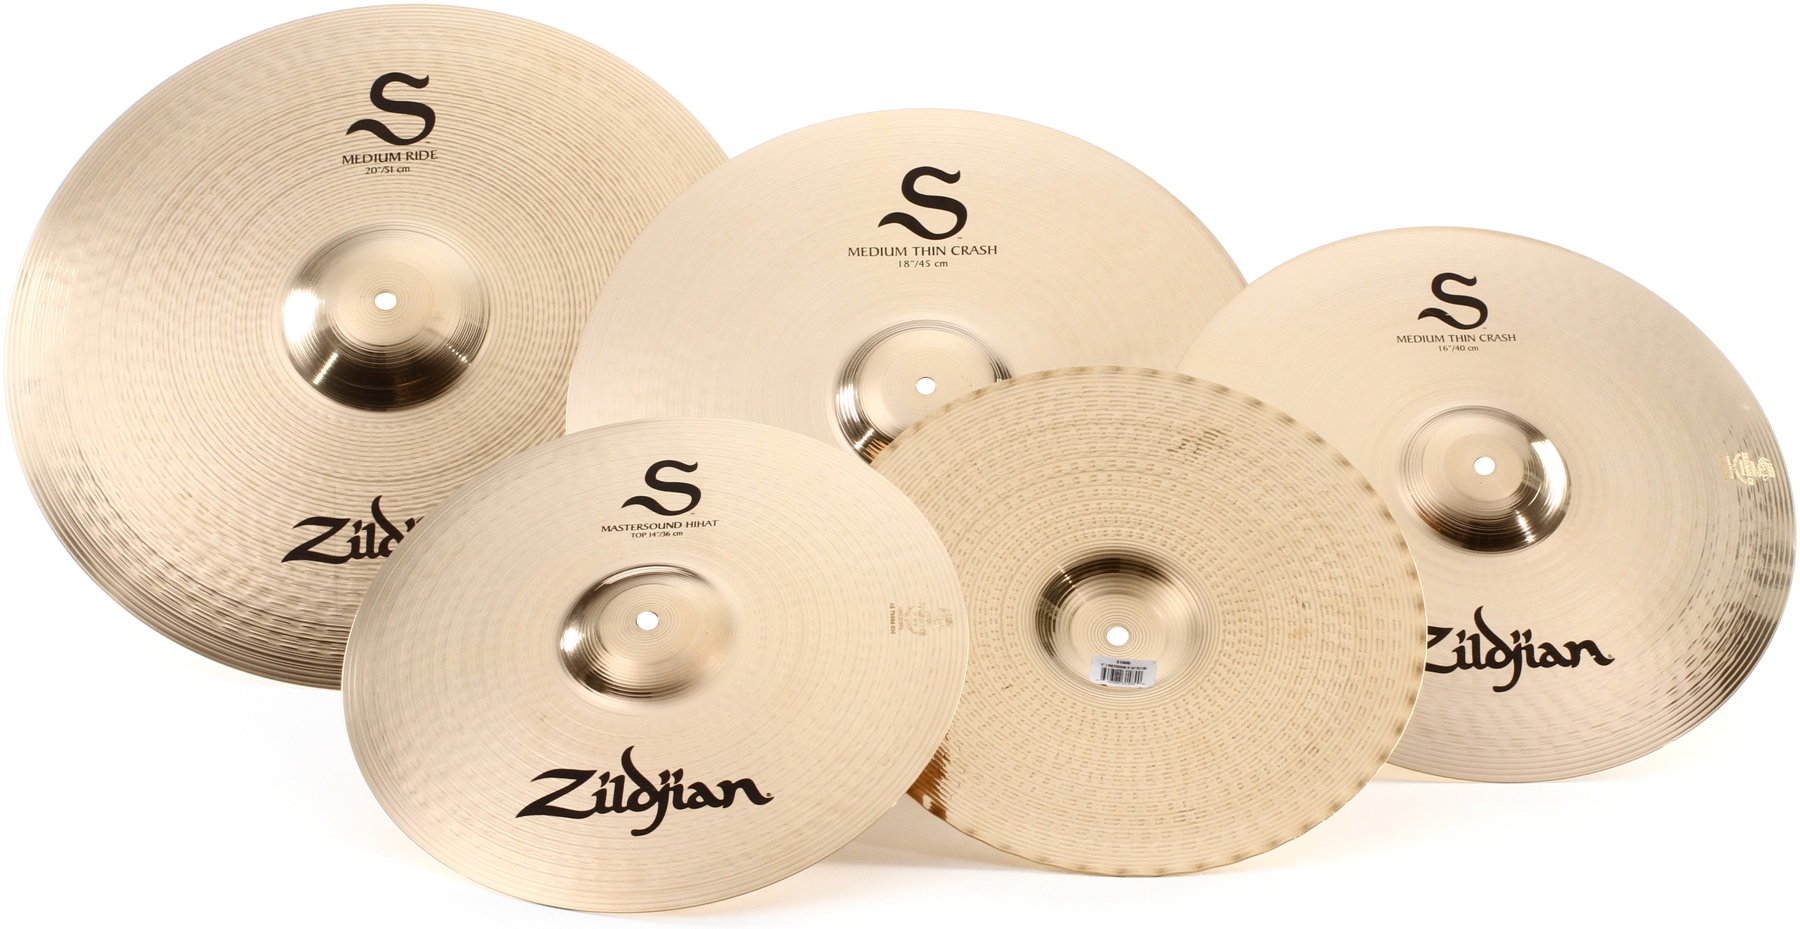 Set b new. Барабанные тарелки Zildjian. Zildjian s390 s performer Set. Тарелки для барабанов Zildjian Сэбиан. Zildjian с пазом.